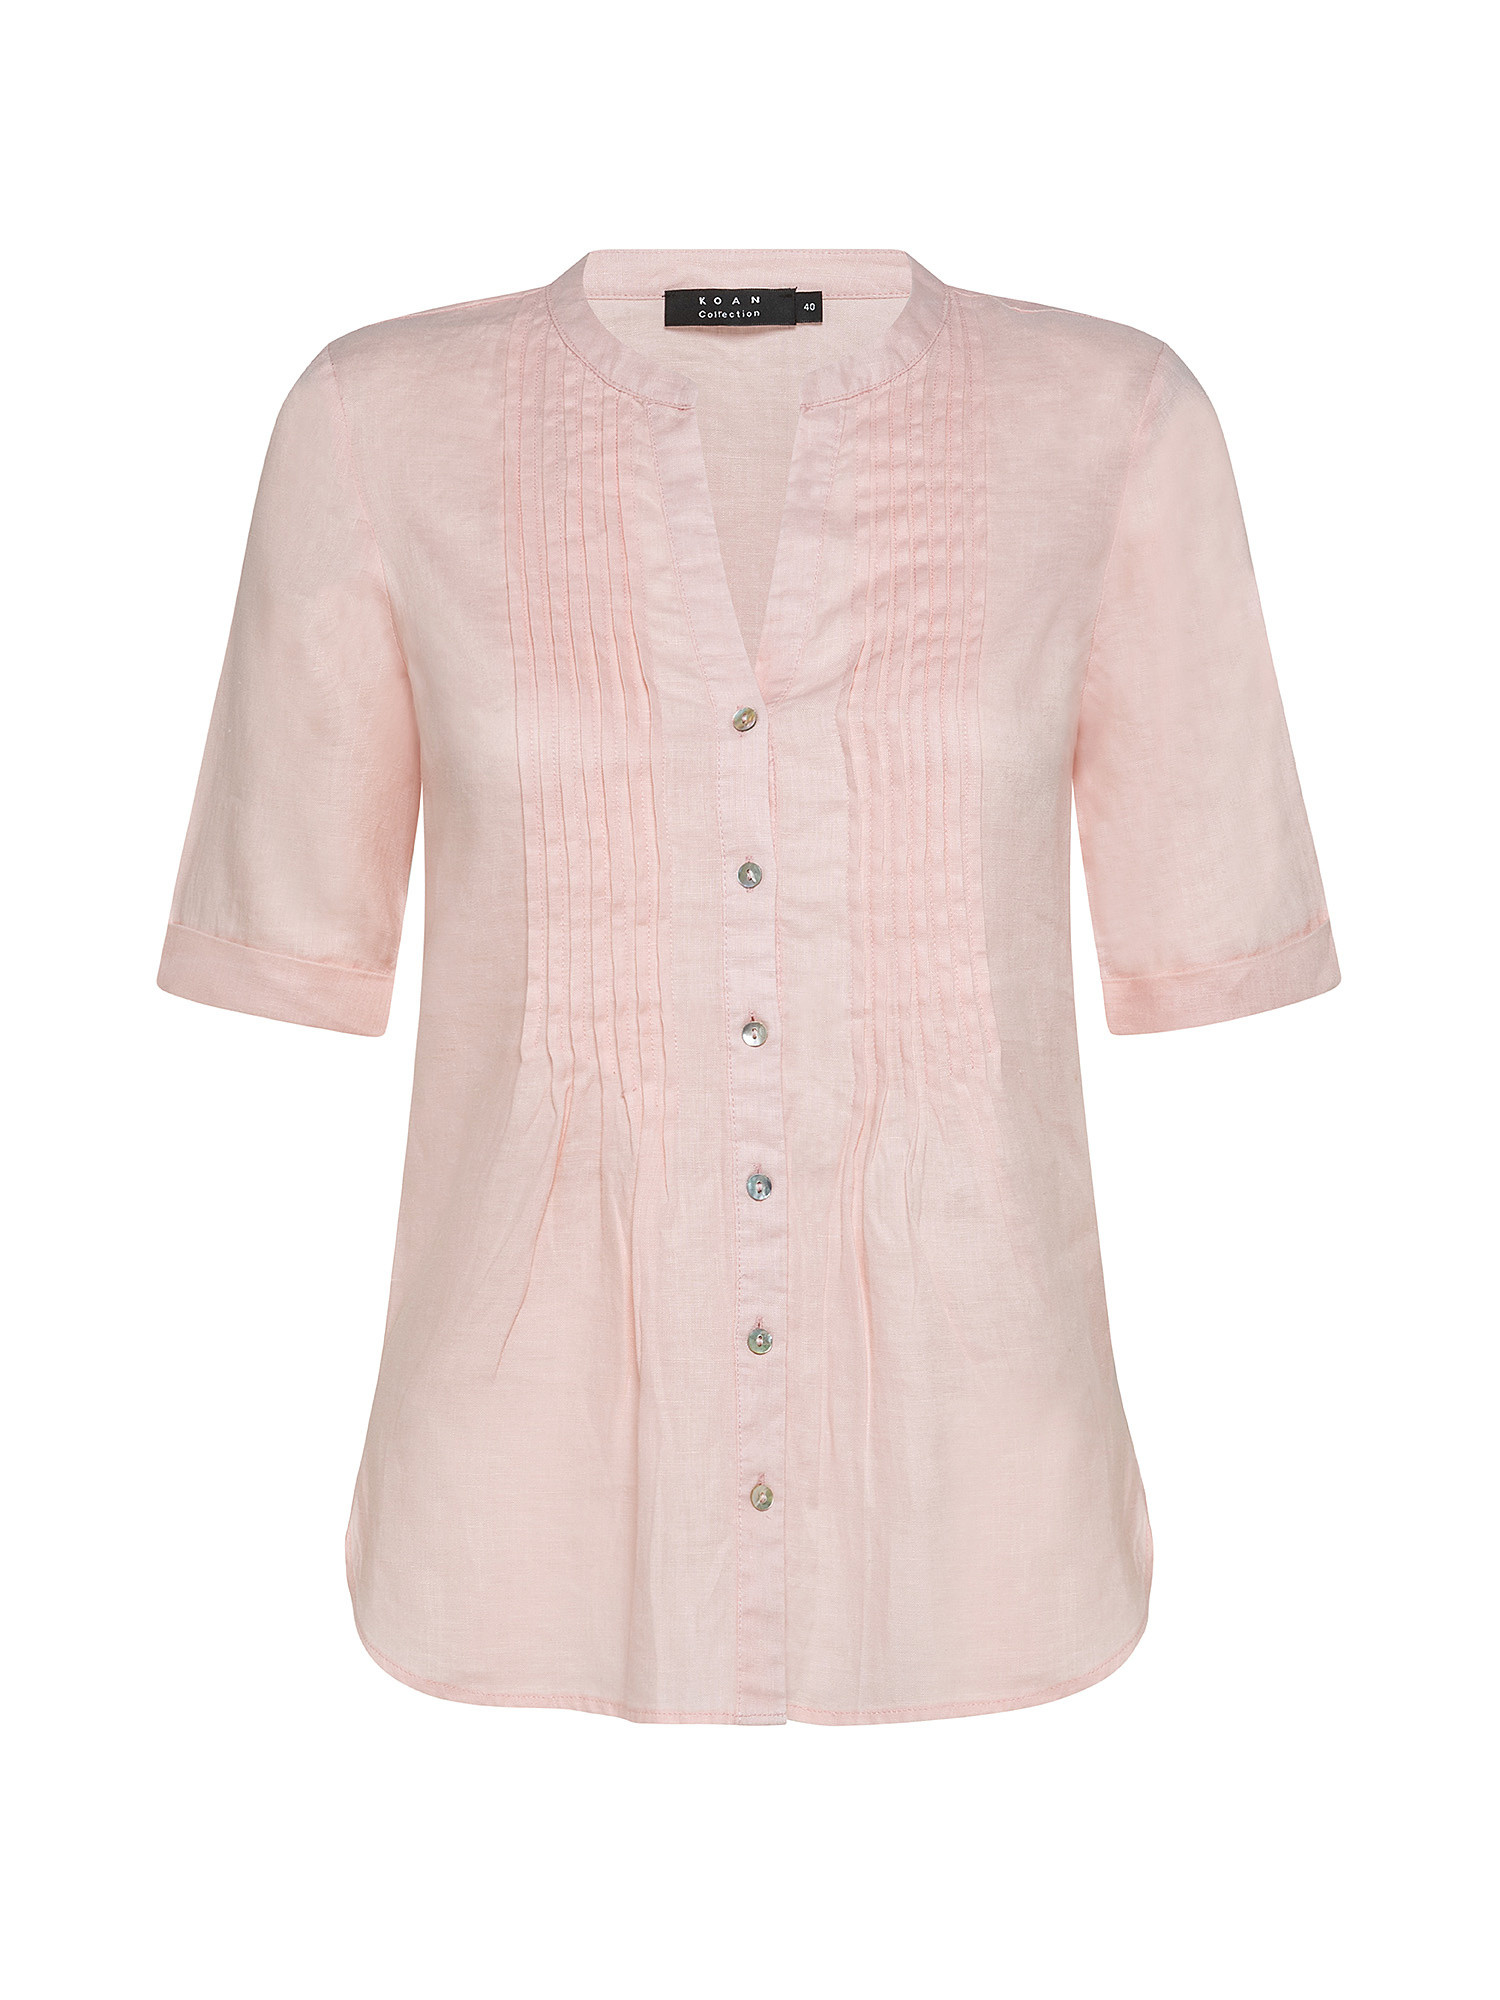 Camicia puro lino con pieghine, Rosa, large image number 0